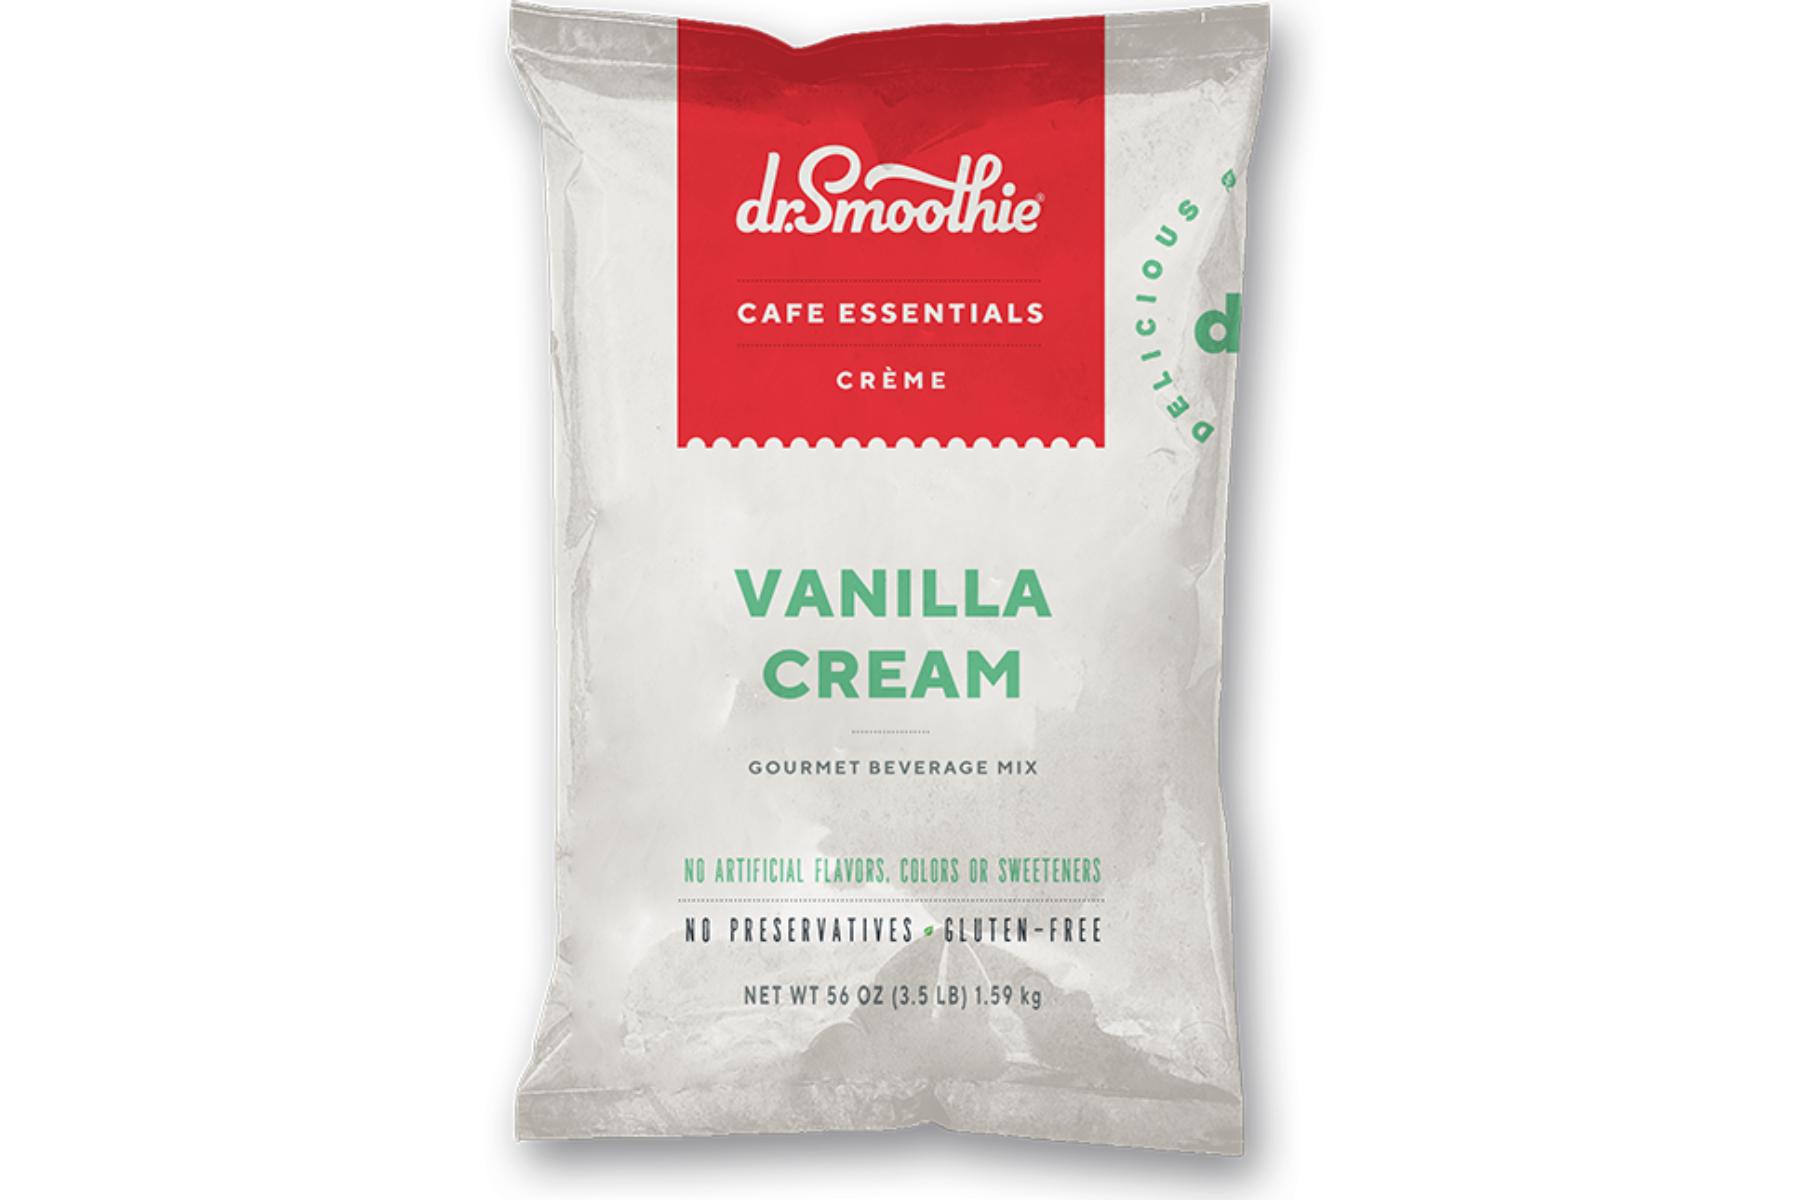 Dr. Smoothie Cafe Essentials Creme - 25lb Bulk Box: Vanilla Cream